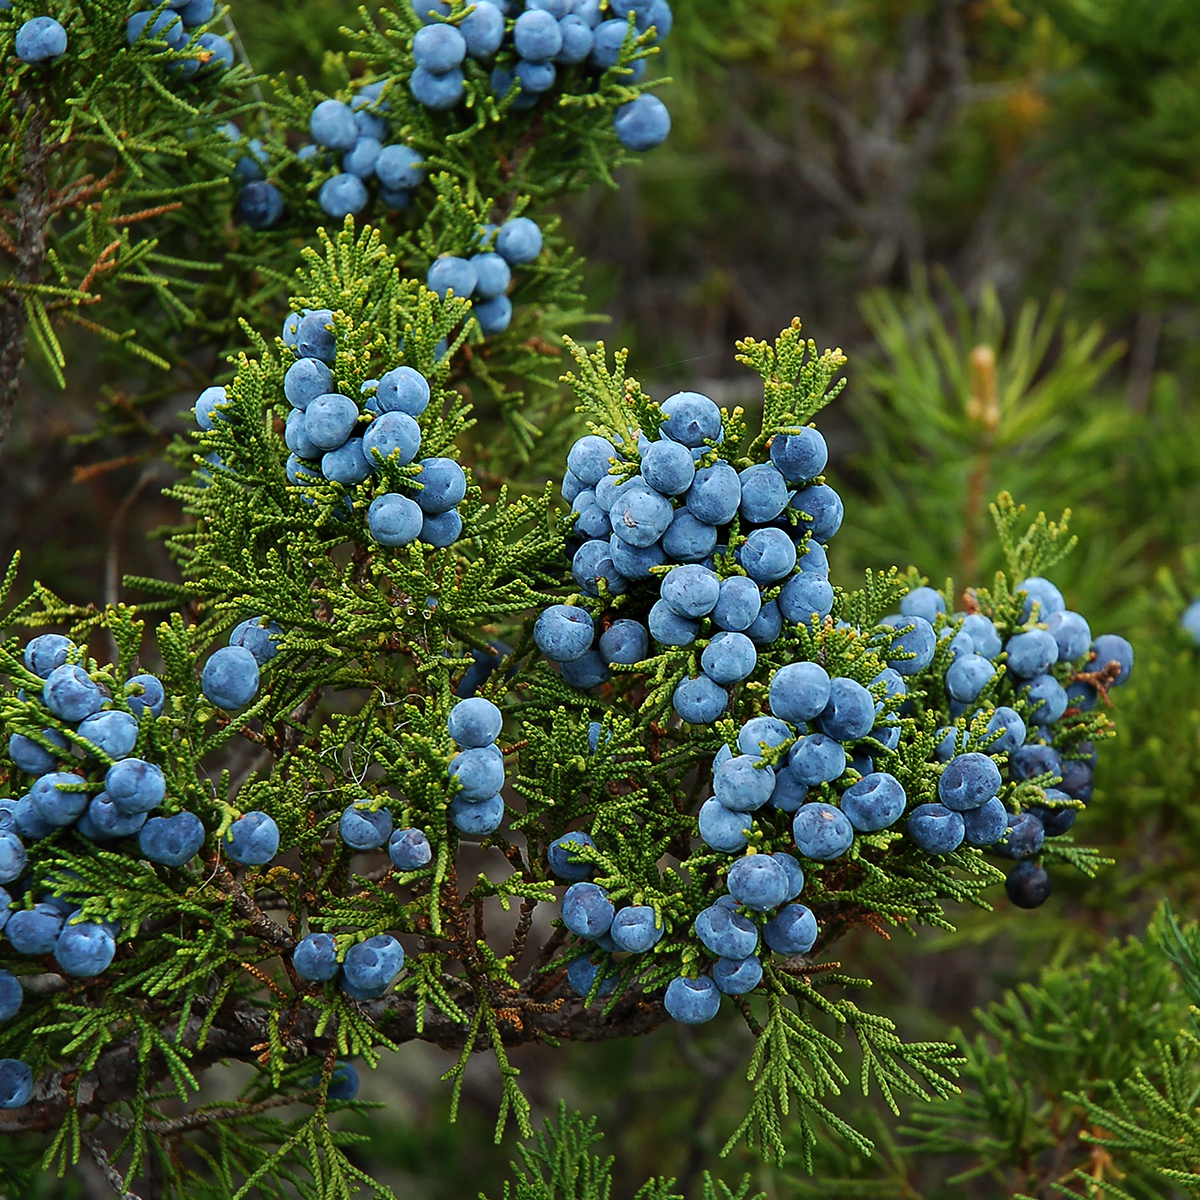 Juniper berries.